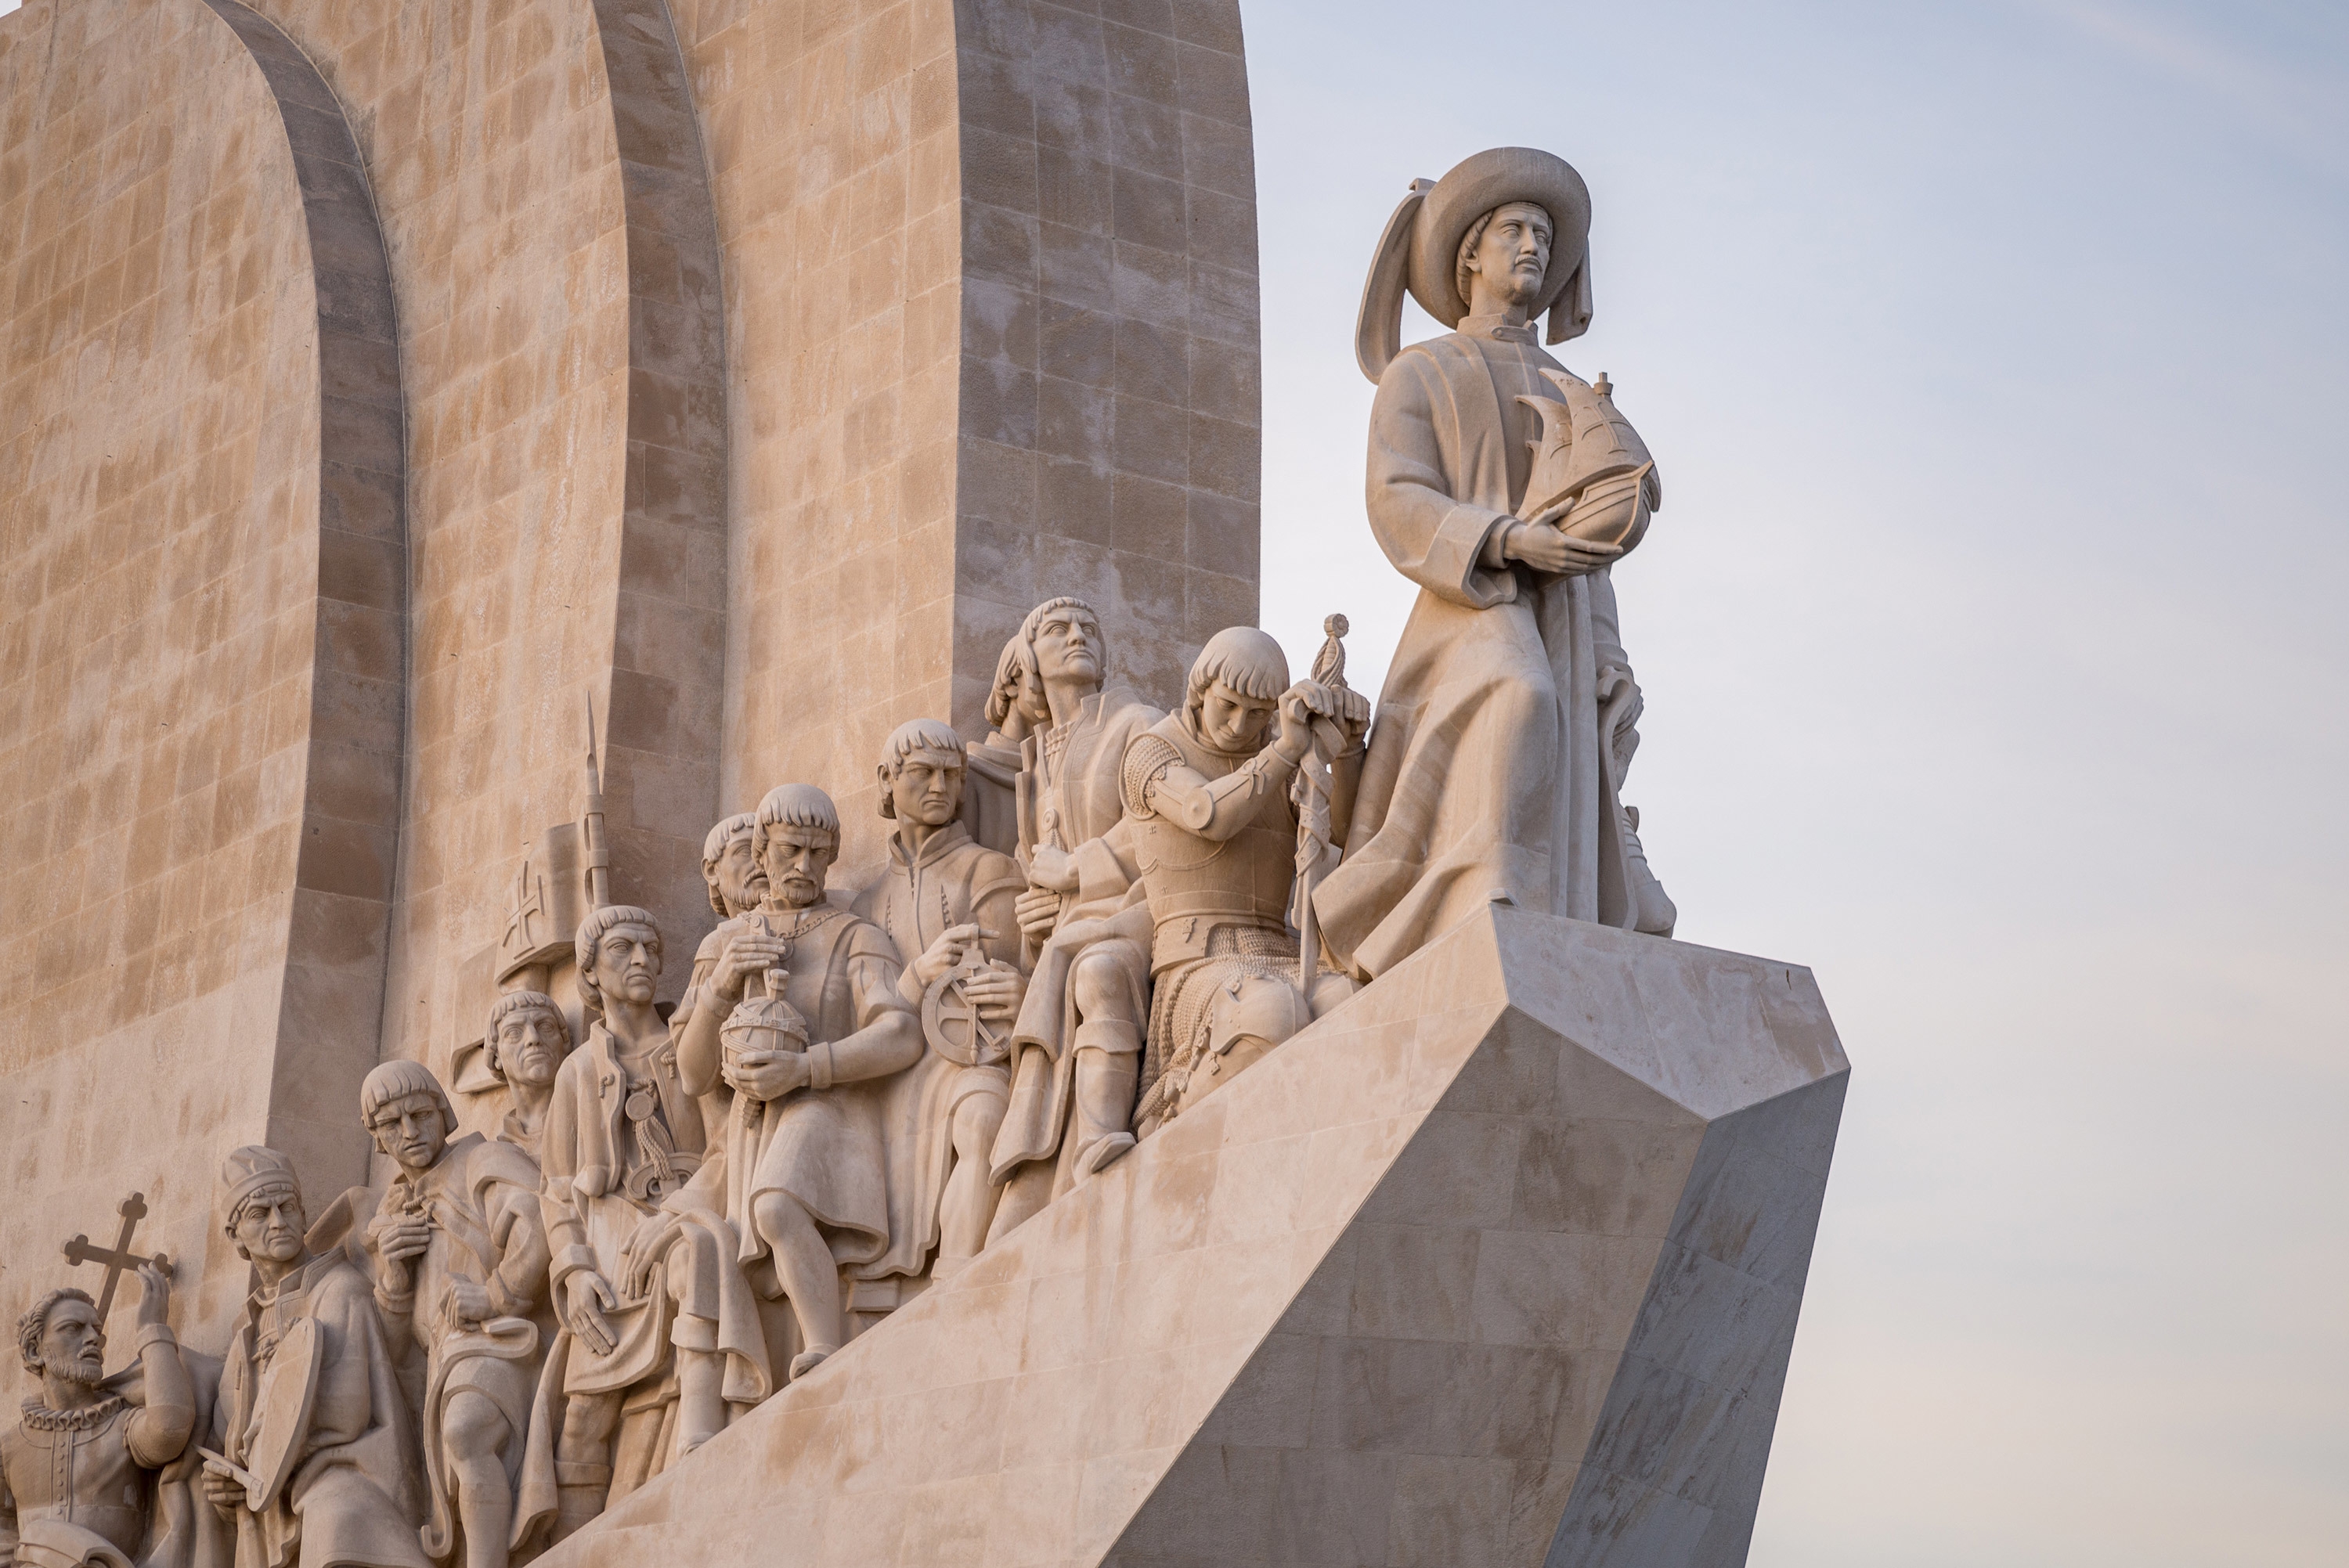 estatuas-no-monumento-dos-descobrimentos-ao-sol-em-lisboa-portugal